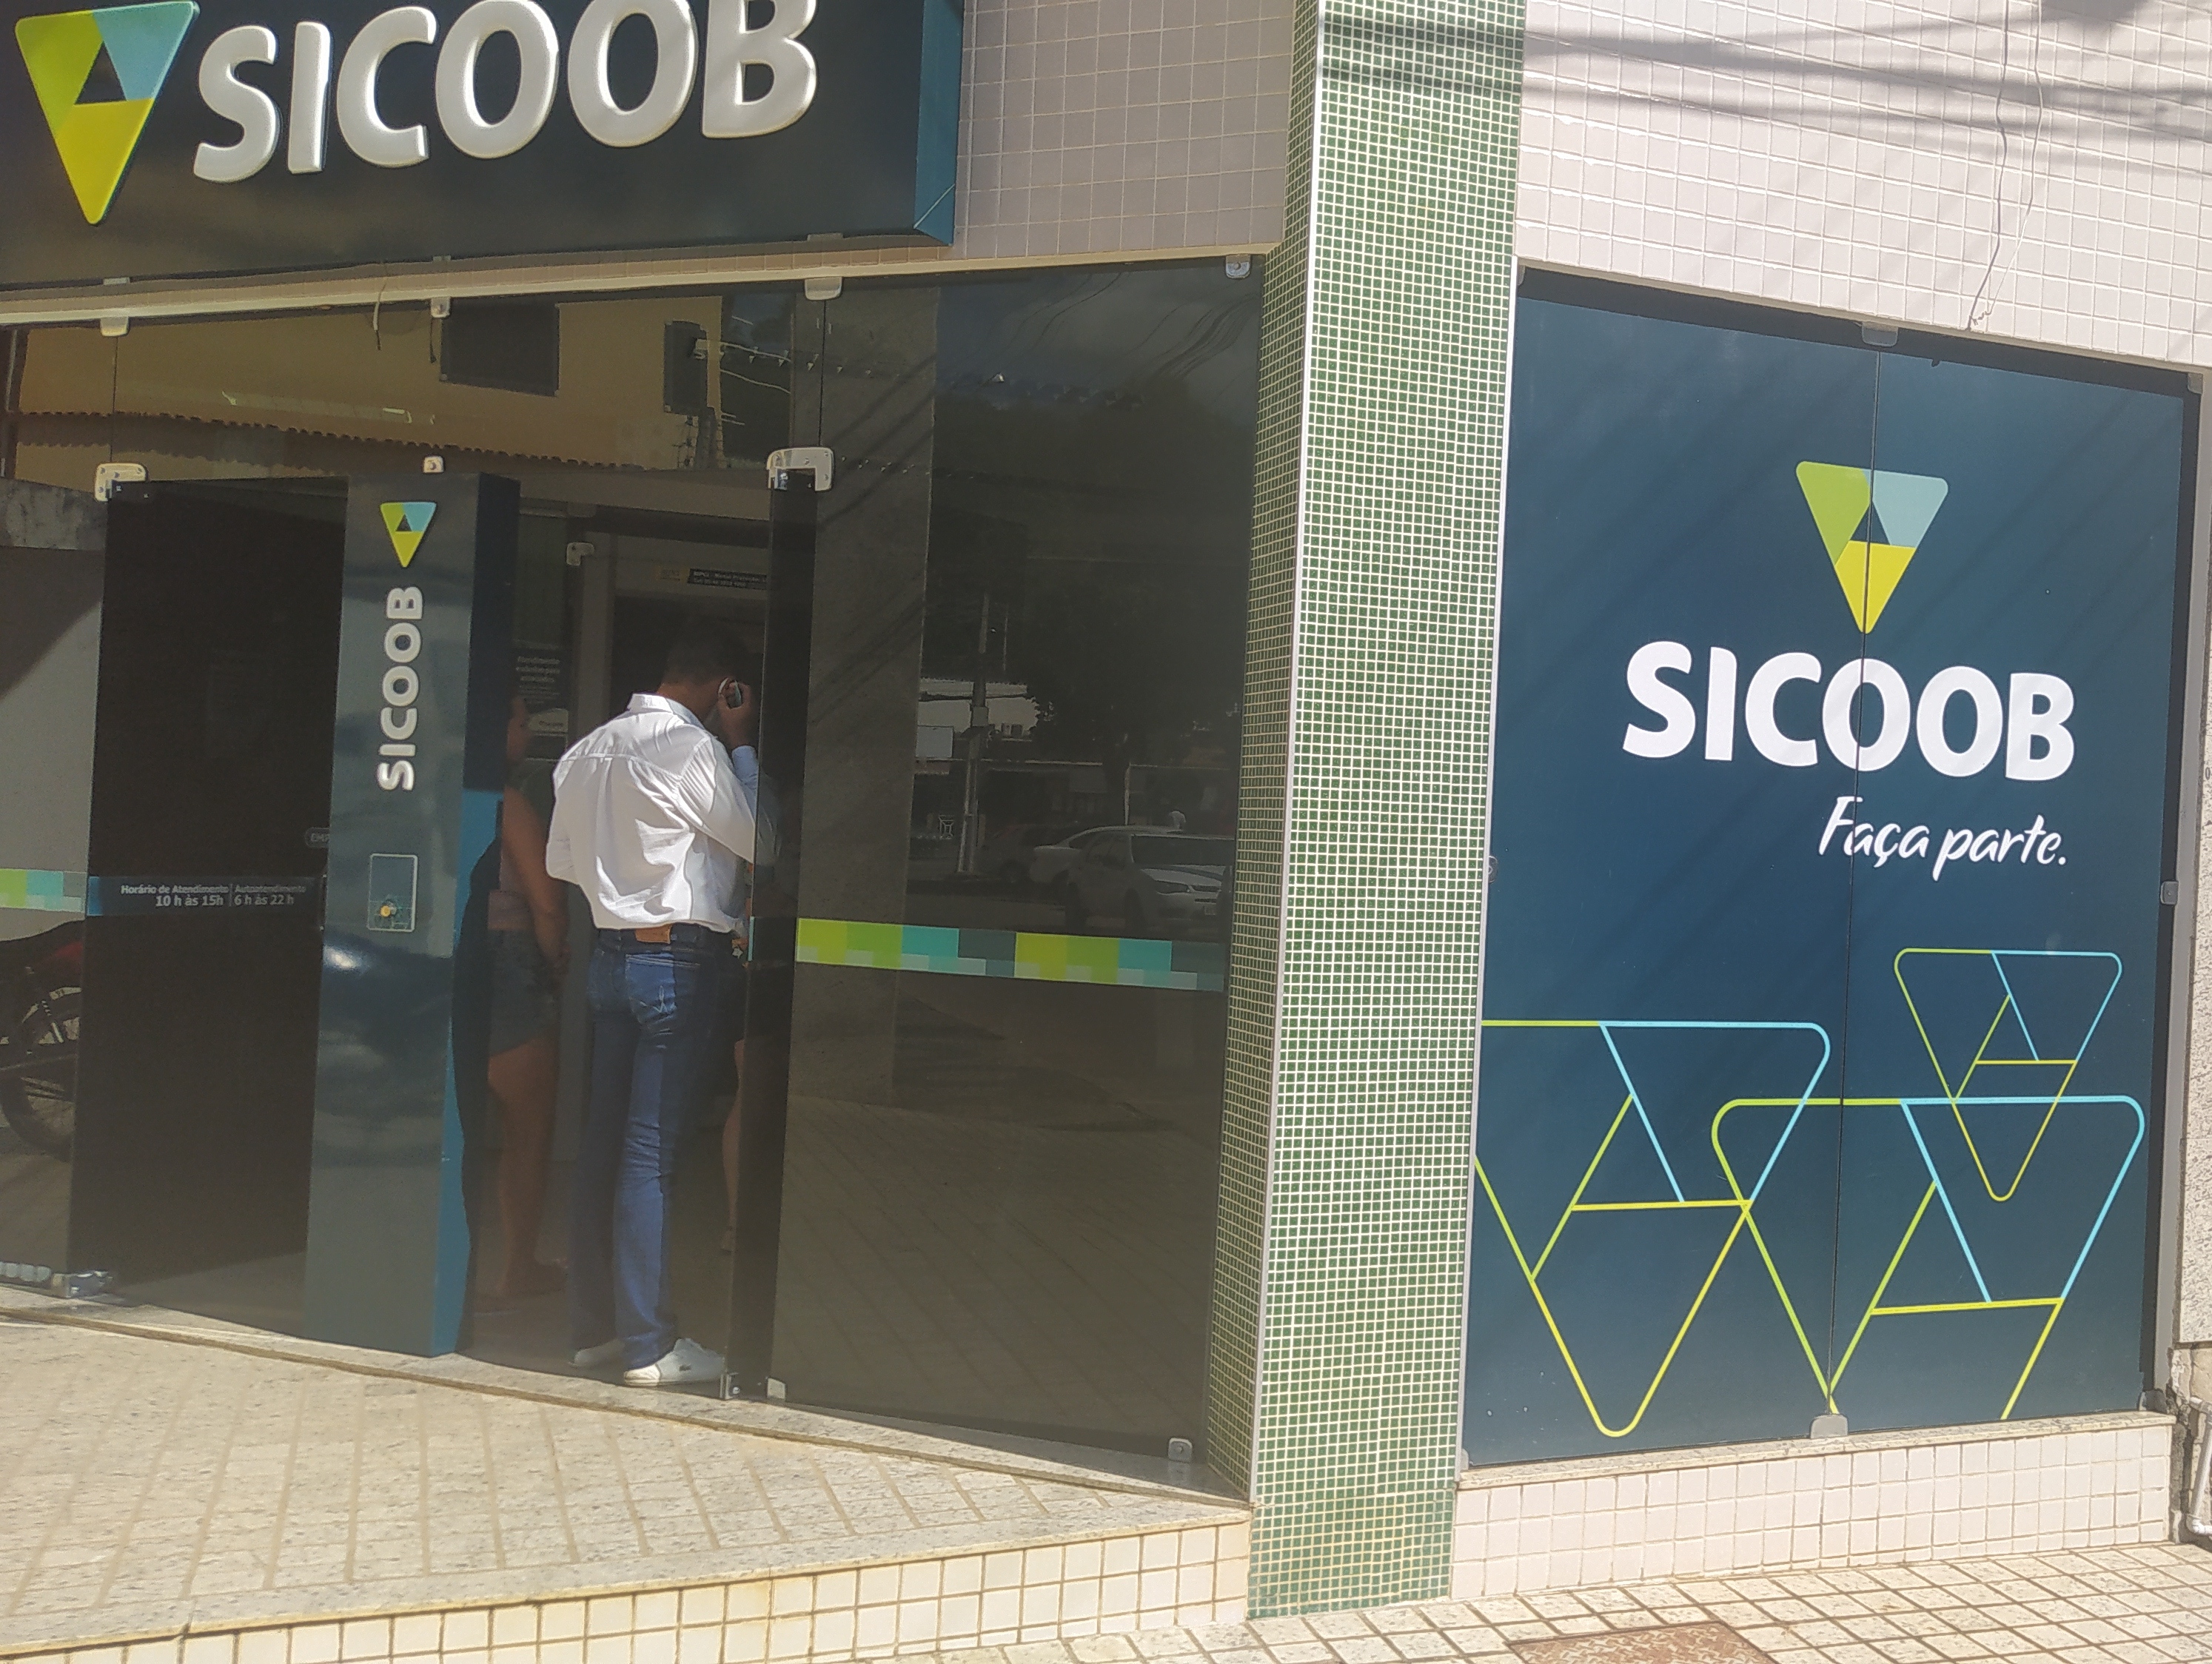 Sicoob ES apoia seus cooperados durante a crise e amplia suas atividades